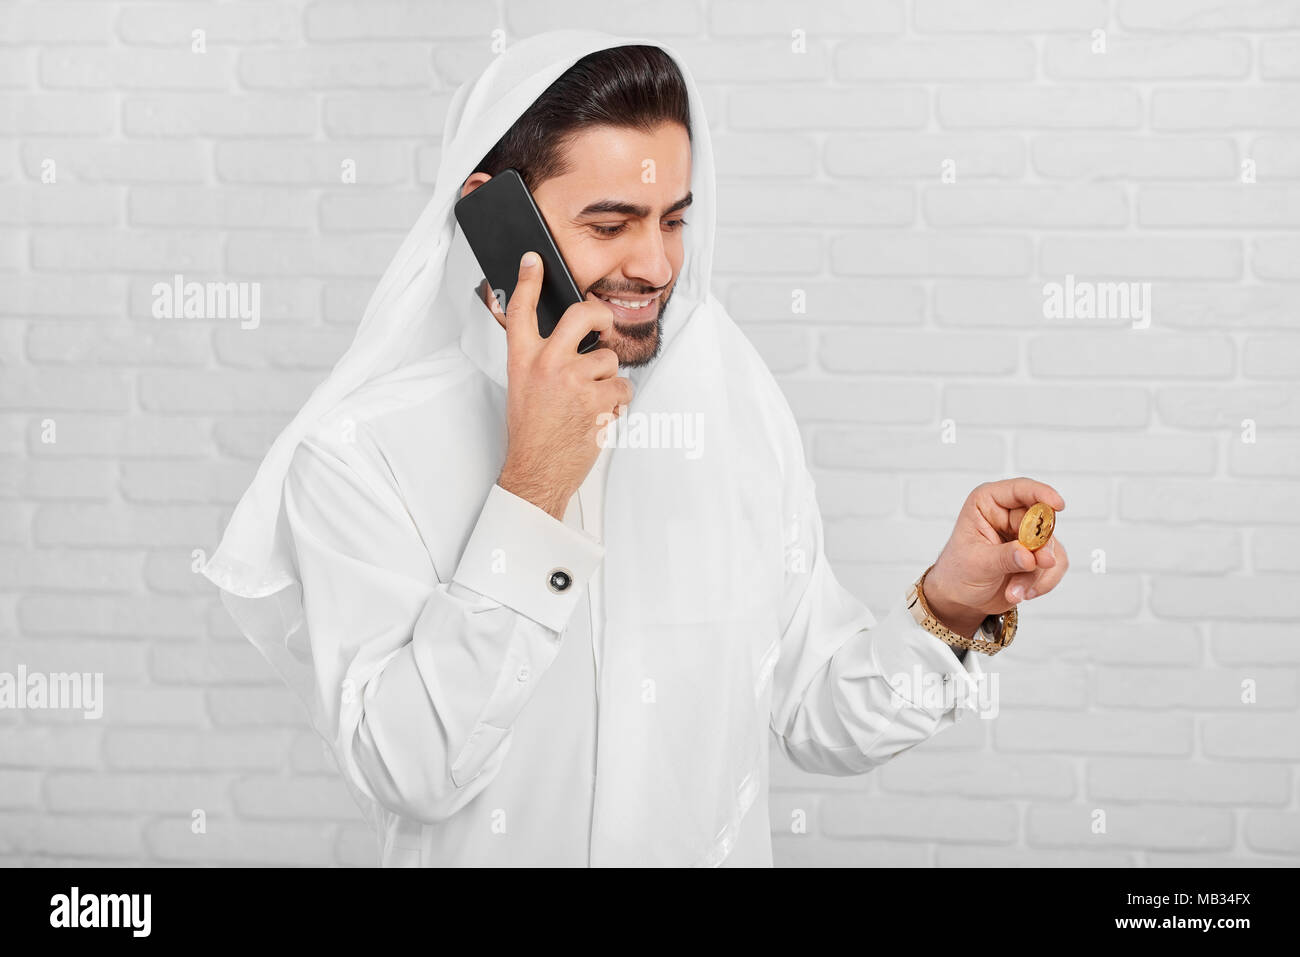 Un musulman businessman wearing costume traditionnel blanc, regarde sur bitcoin doré dans sa main. Dans un autre côté, il garde son téléphone portable noir. Il porte golden watch et boutons de manchette sur sa chemise. Banque D'Images